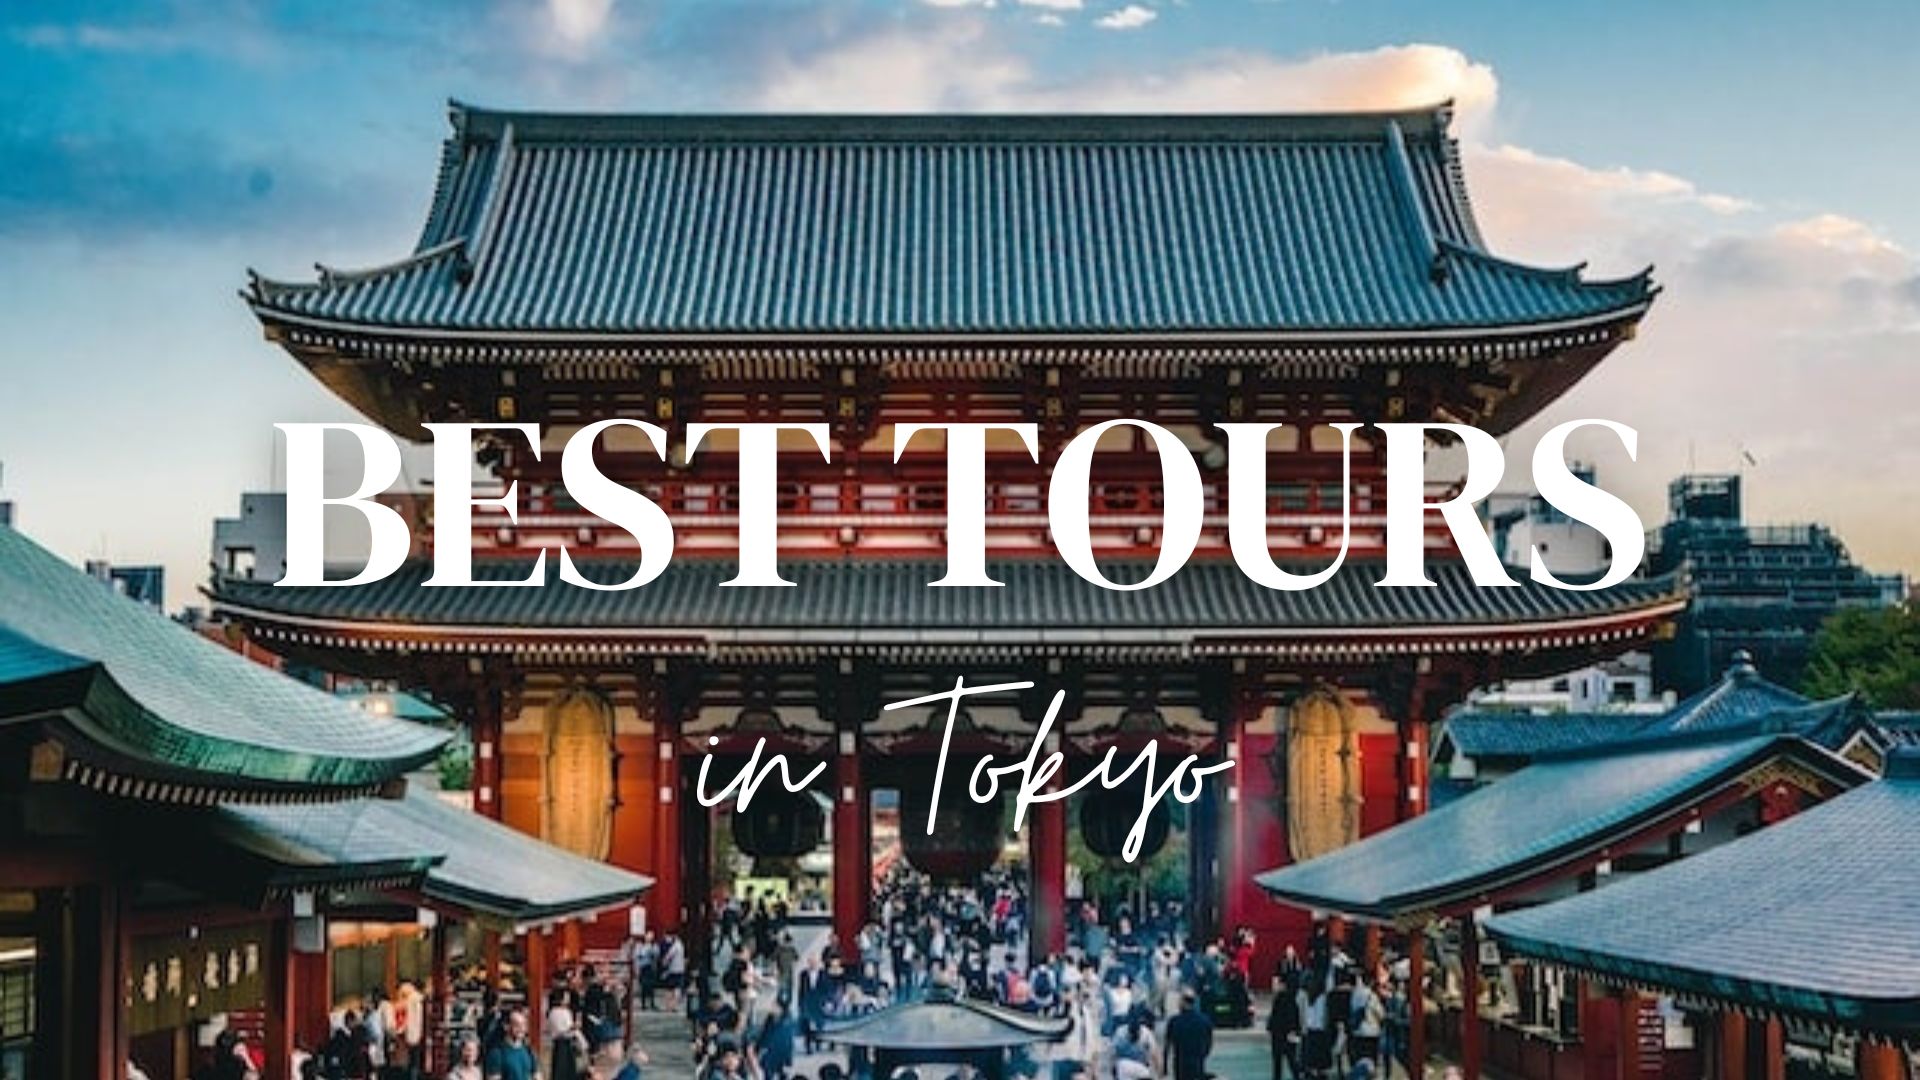 tokyo tour expense